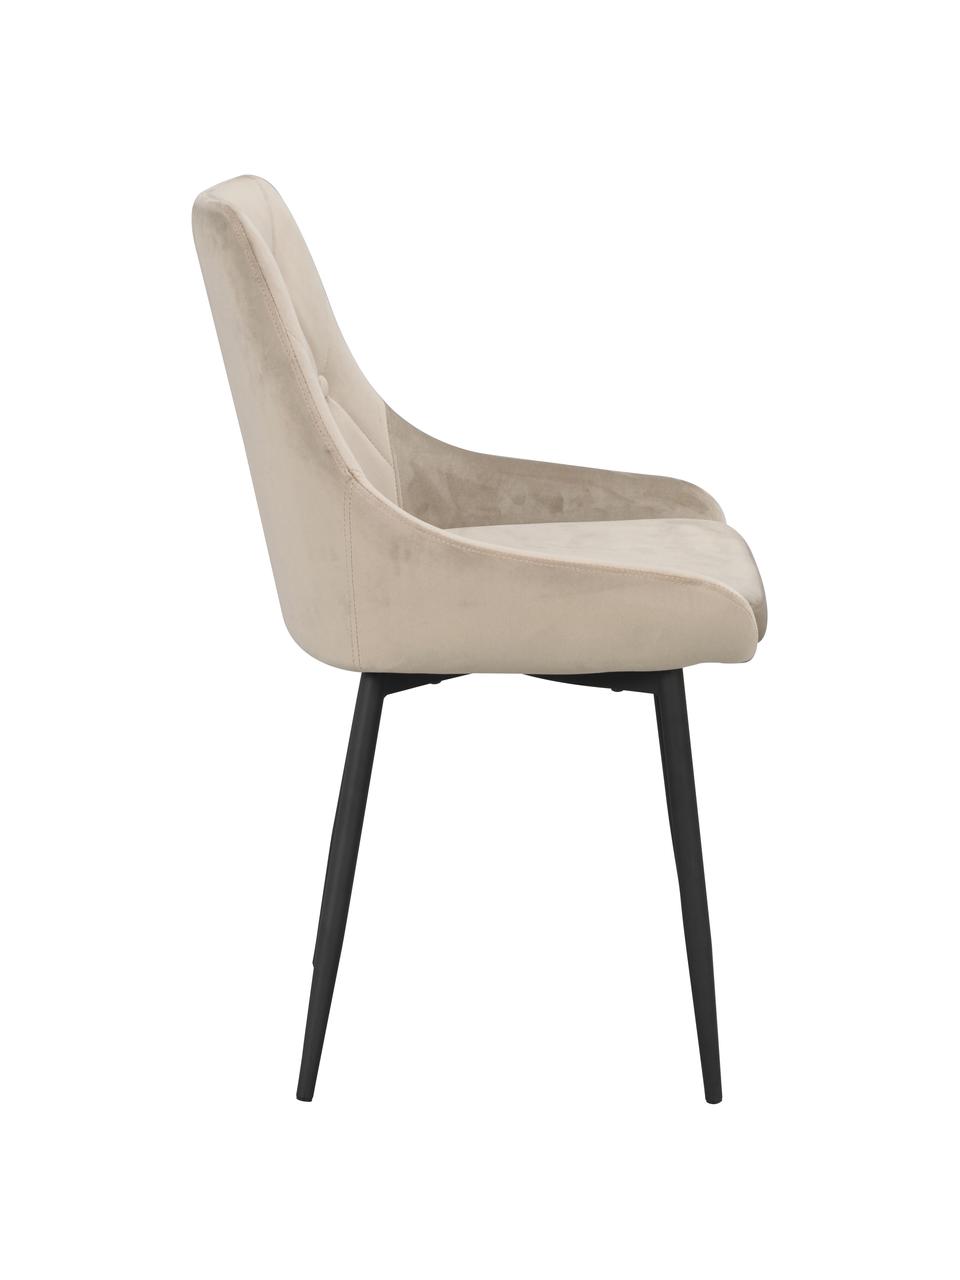 Krzesło tapicerowane z aksamitu Alberton, 2 szt., Tapicerka: 100% aksamit poliestrowy, Nogi: metal lakierowany, Beżowy, czarny, S 49 x G 55 cm